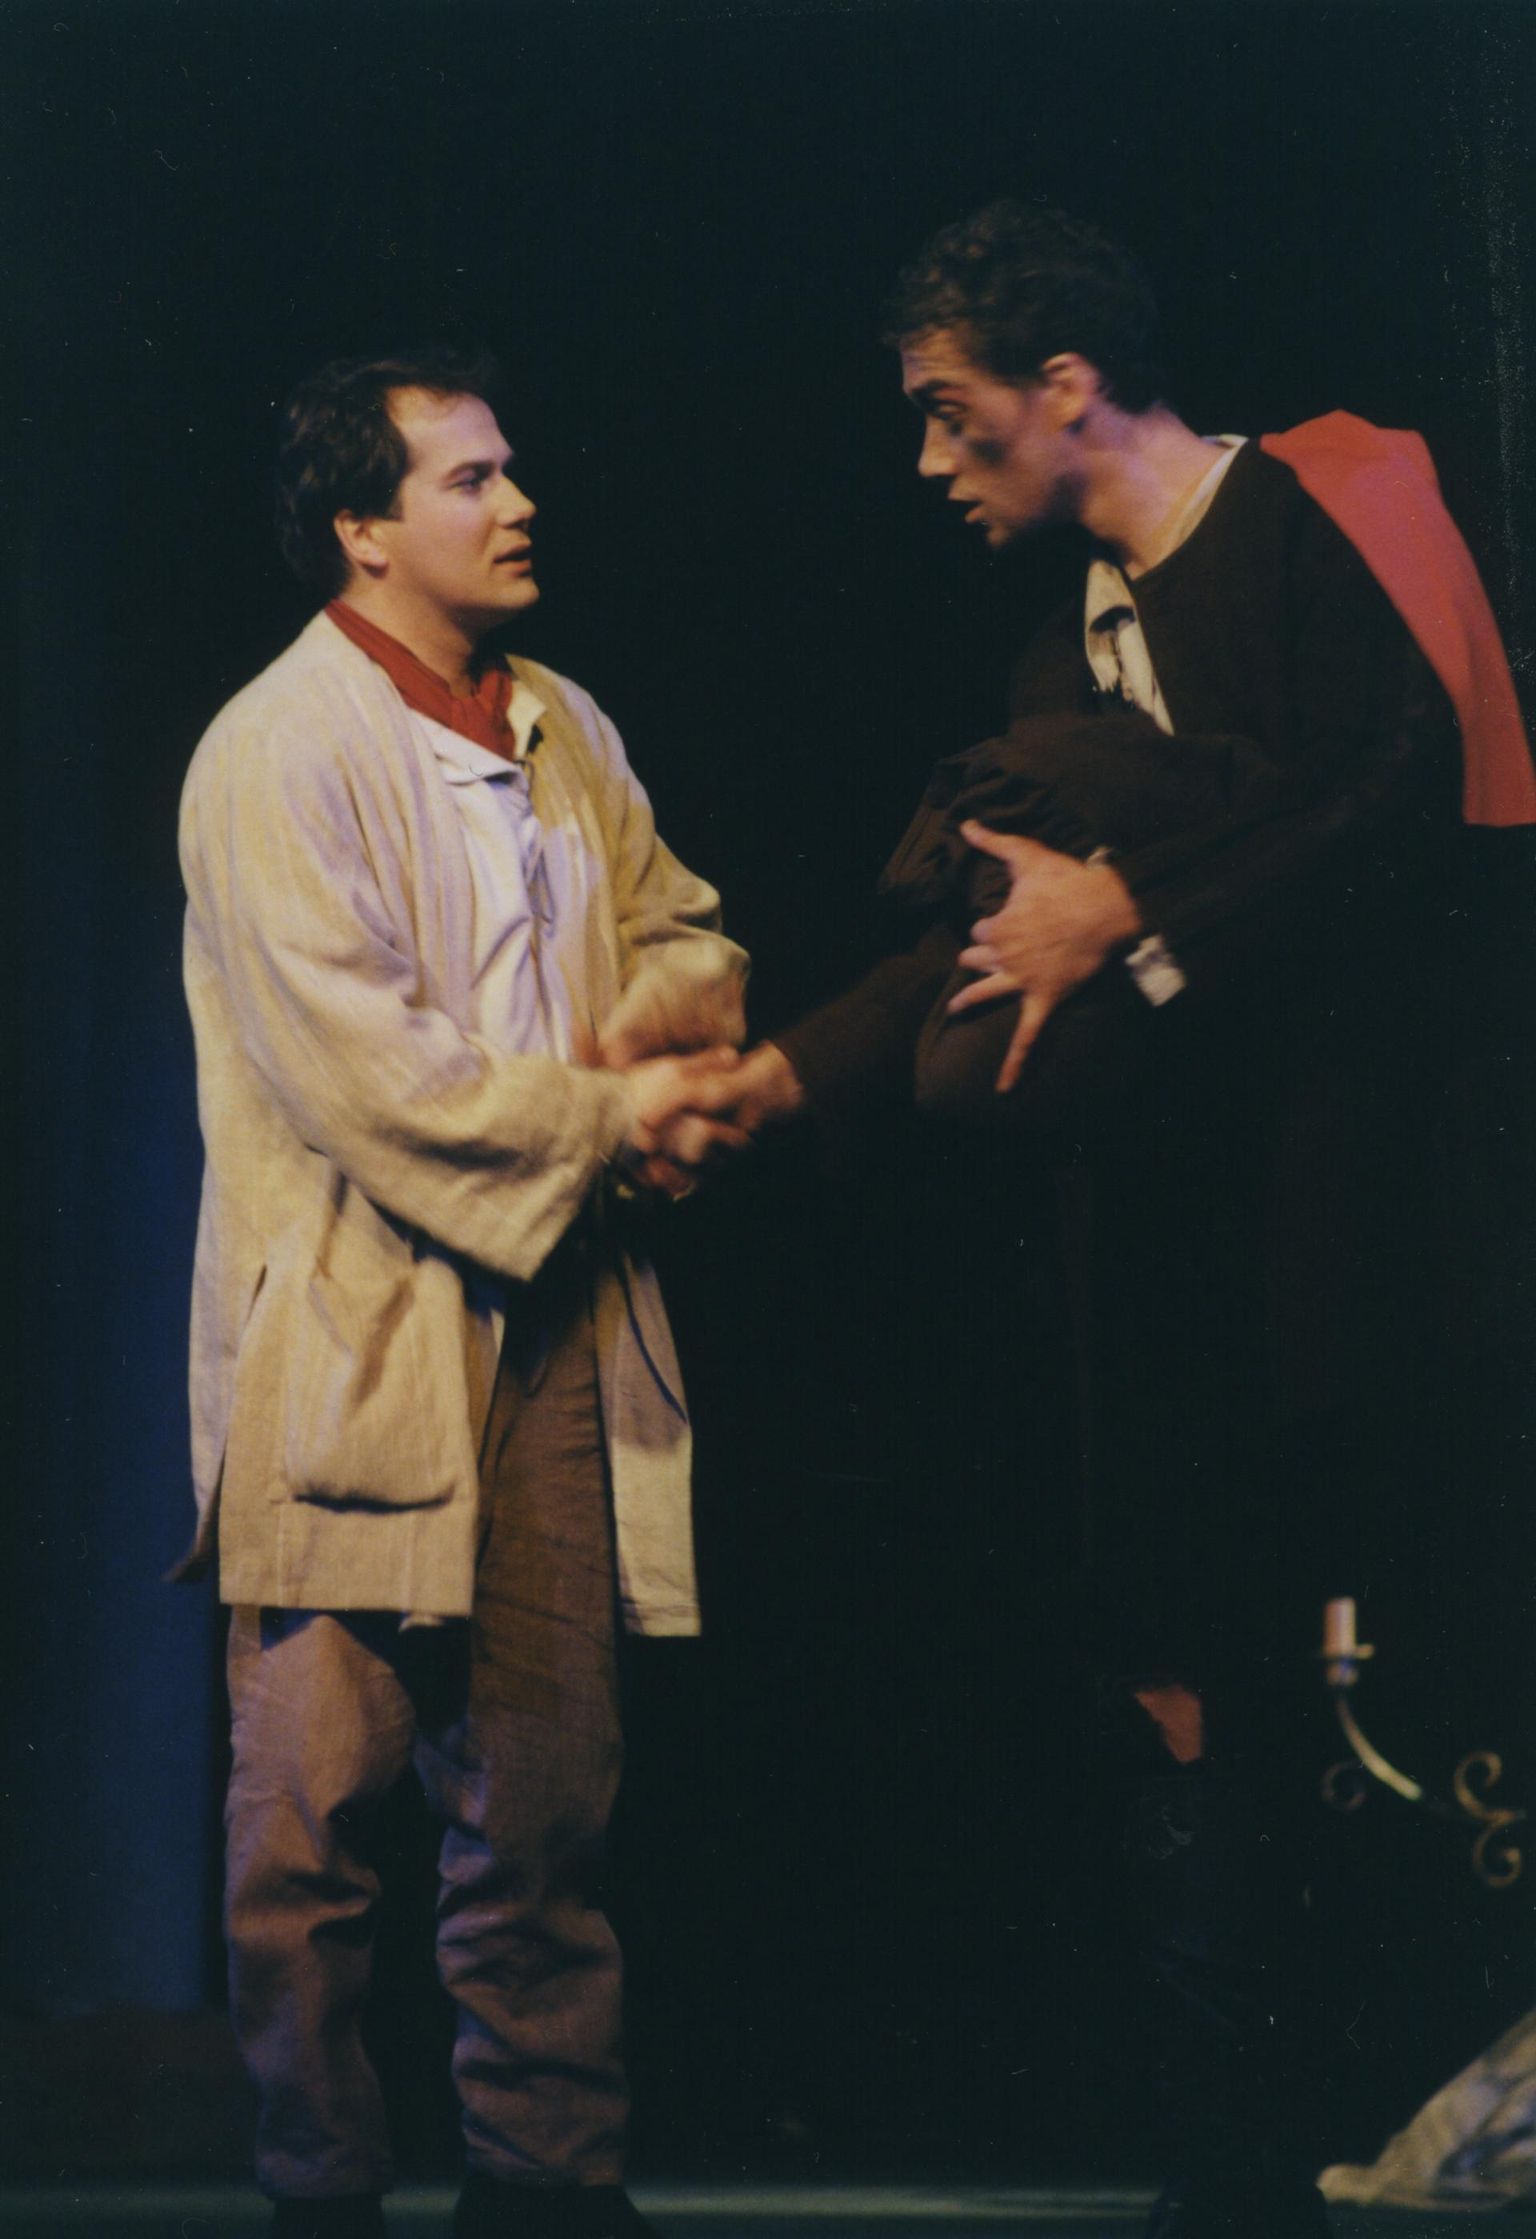 Aasta 1996: Vanemuises laulsid ooperis "Tosca" Vello Jürna (vaskaul) ja Ain Anger.